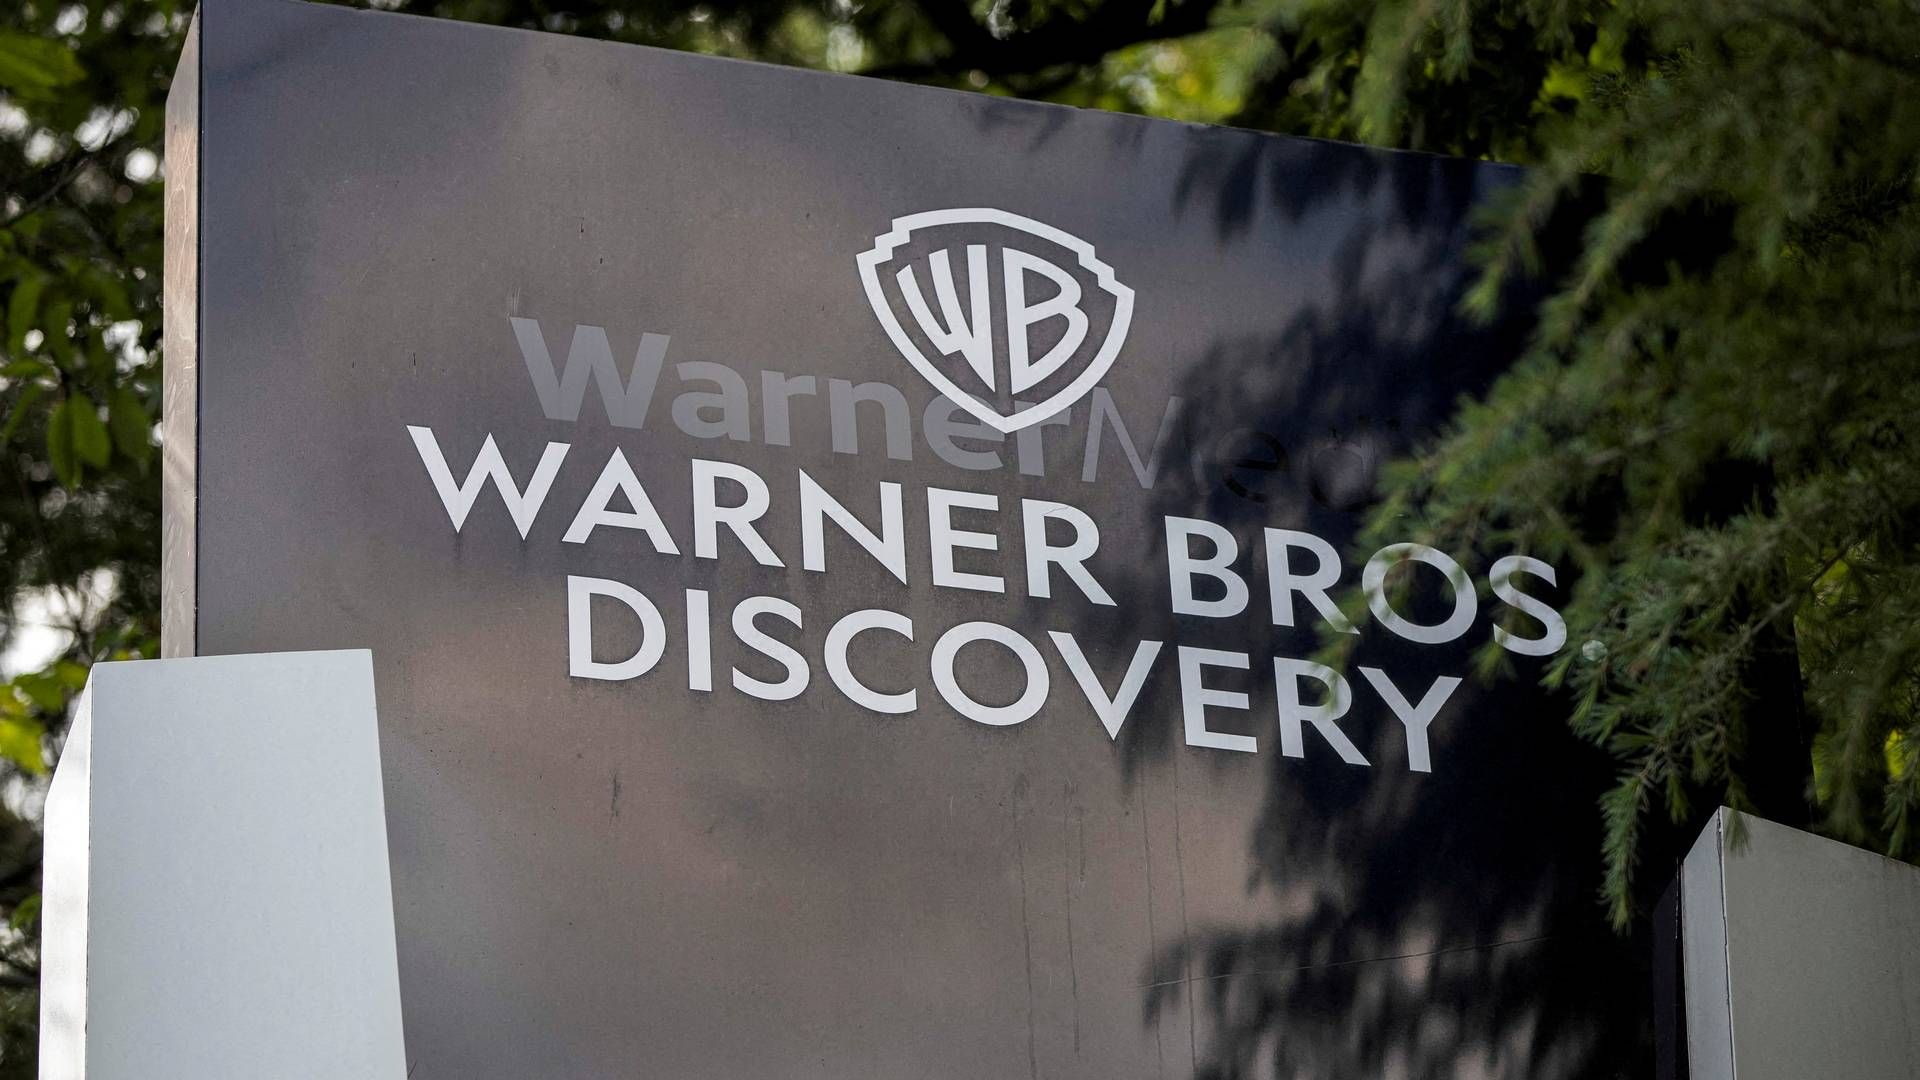 Strejker blandt manuskriptforfattere og skuespillere får Warner Bros. Discovery til at nedjustere forventningerne til årets resultat. | Foto: Alyssa Pointer